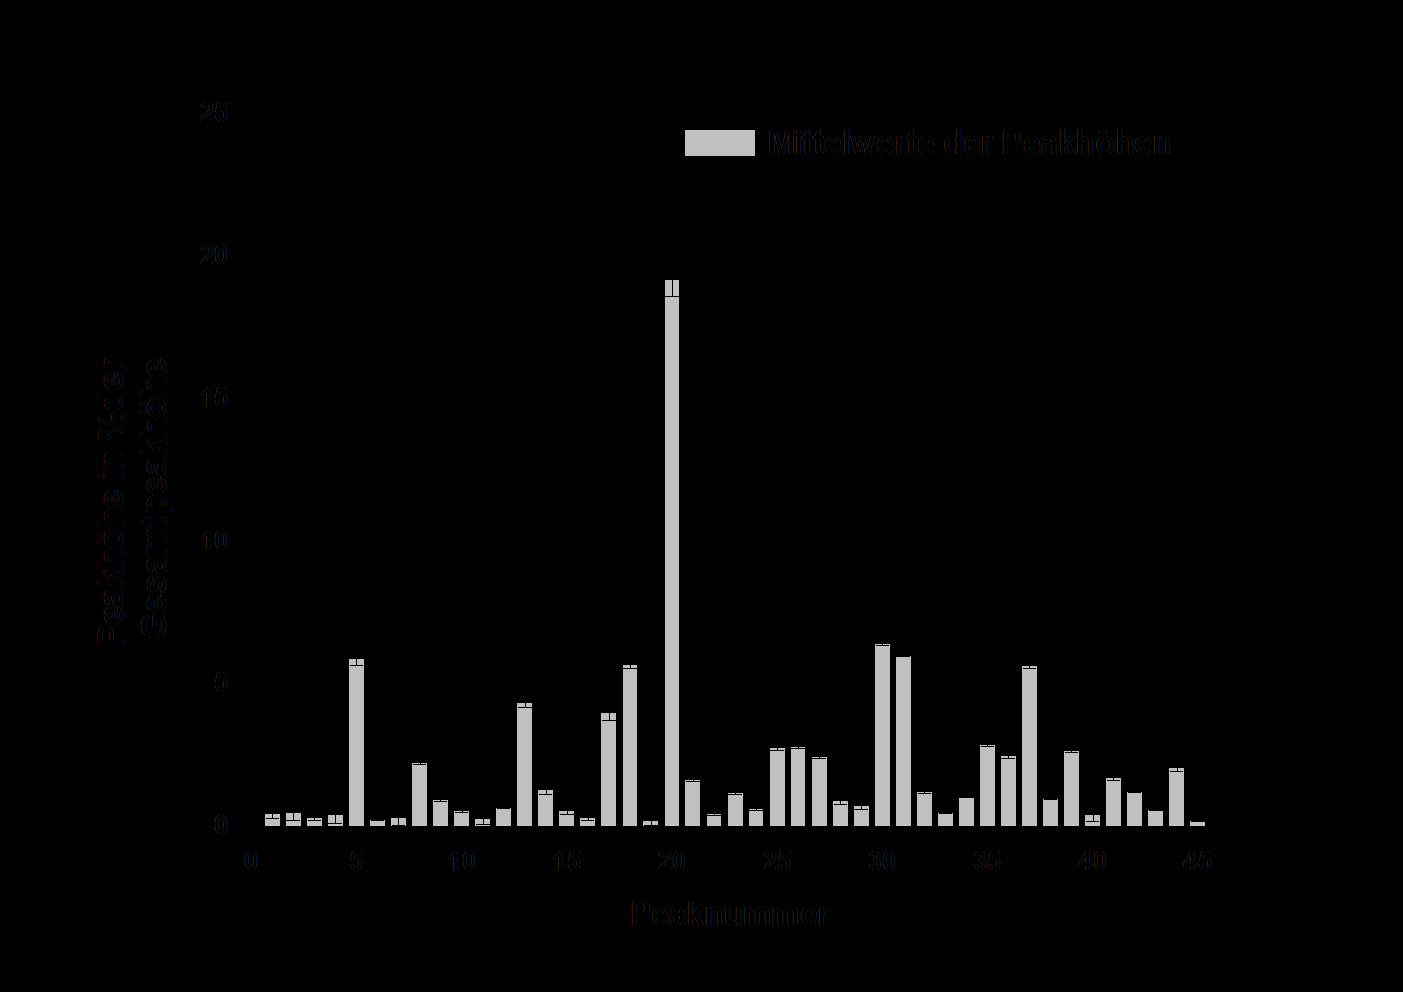 Abbildung 4-9: Mittelwerte der (A) Peakflächen der dominanten Peaks im HA N-Glykanfingerprint des H1N1-RKI aufgetragen gegen